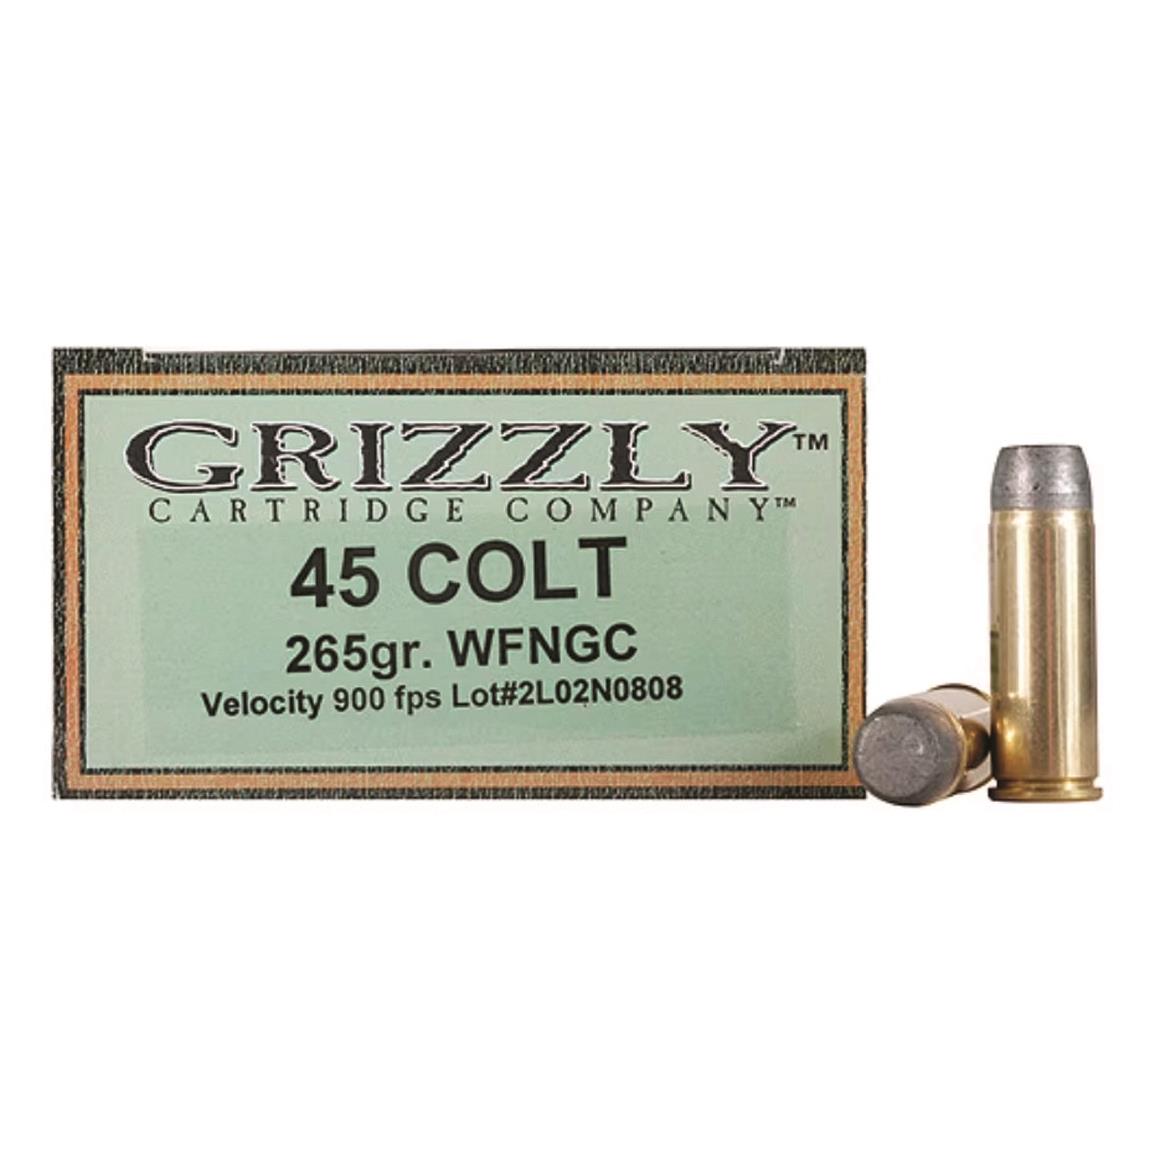 Grizzly Cartridge Co. Cast Performance, .45 Colt, LWFN-GC, 265 Grain, 20 Rounds